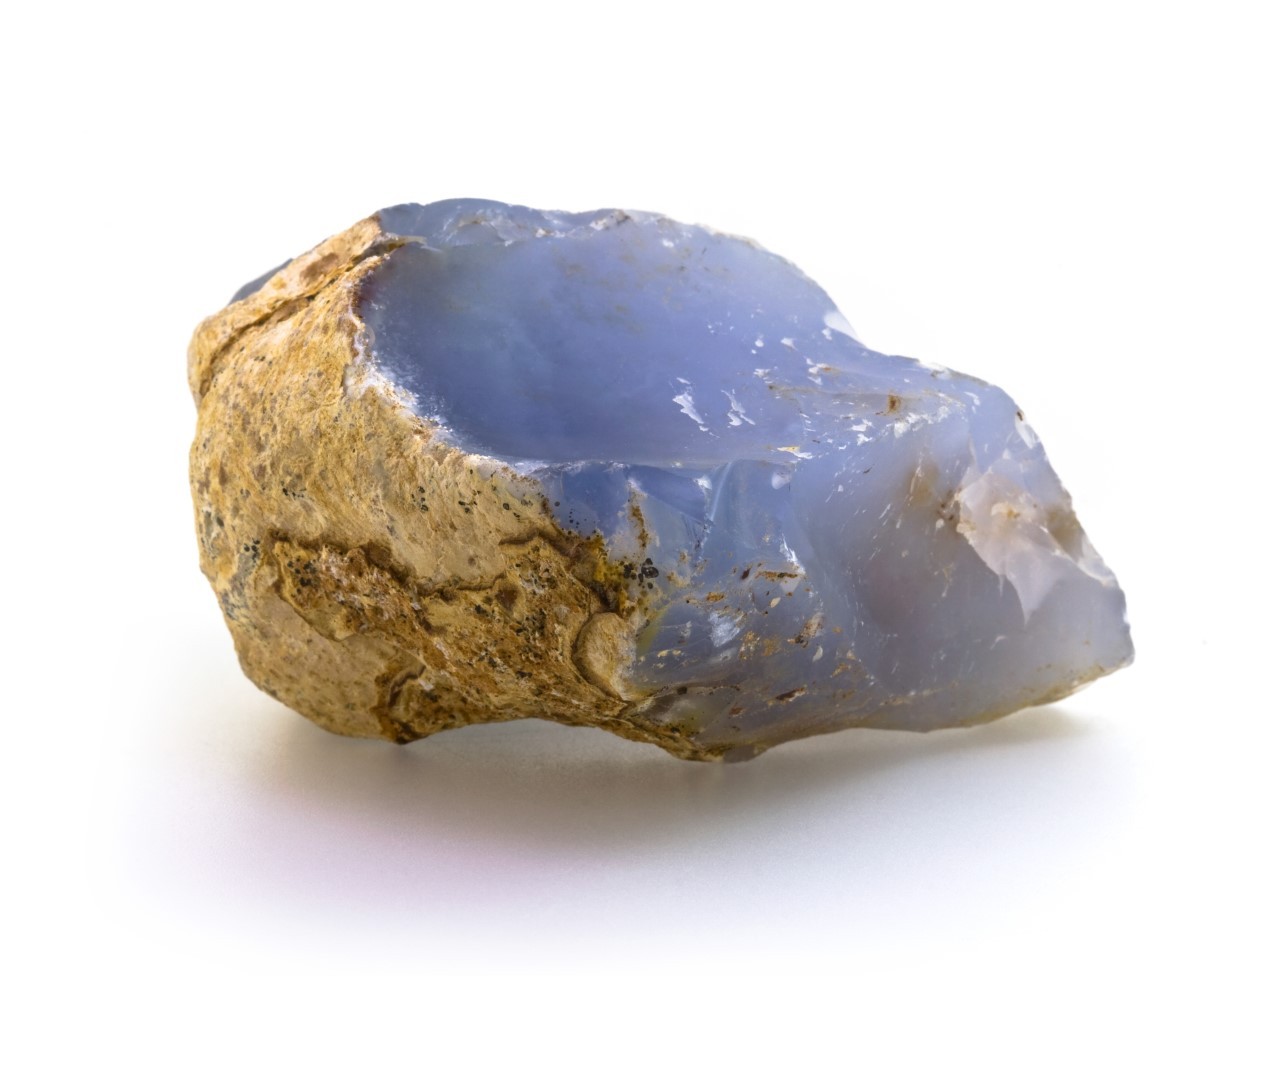 Blue Chalcedony How to identify it? - Rock Identify